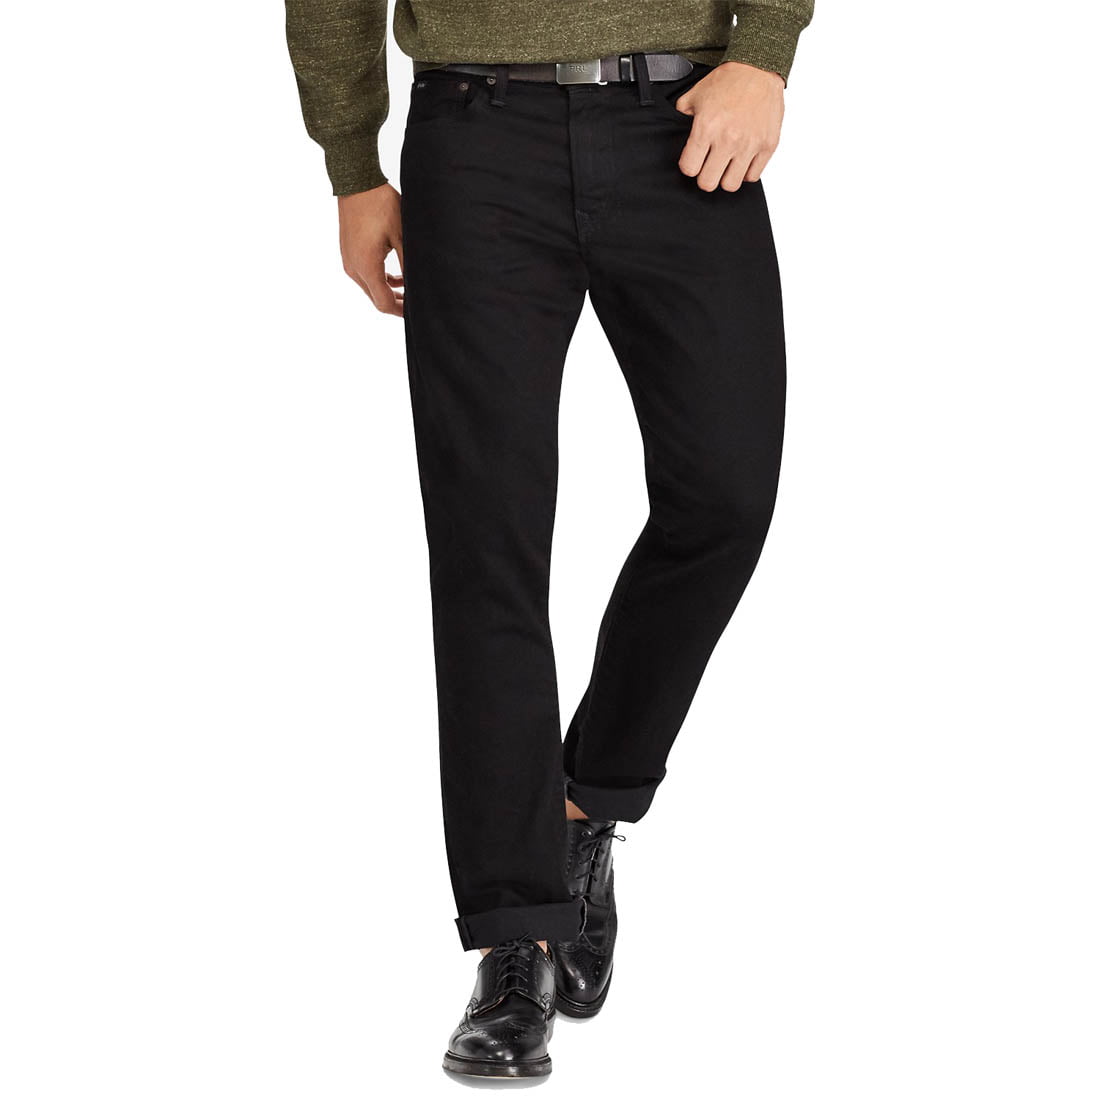 Polo Ralph Lauren Men's Classic Fit Jeans, Black, X 34L -